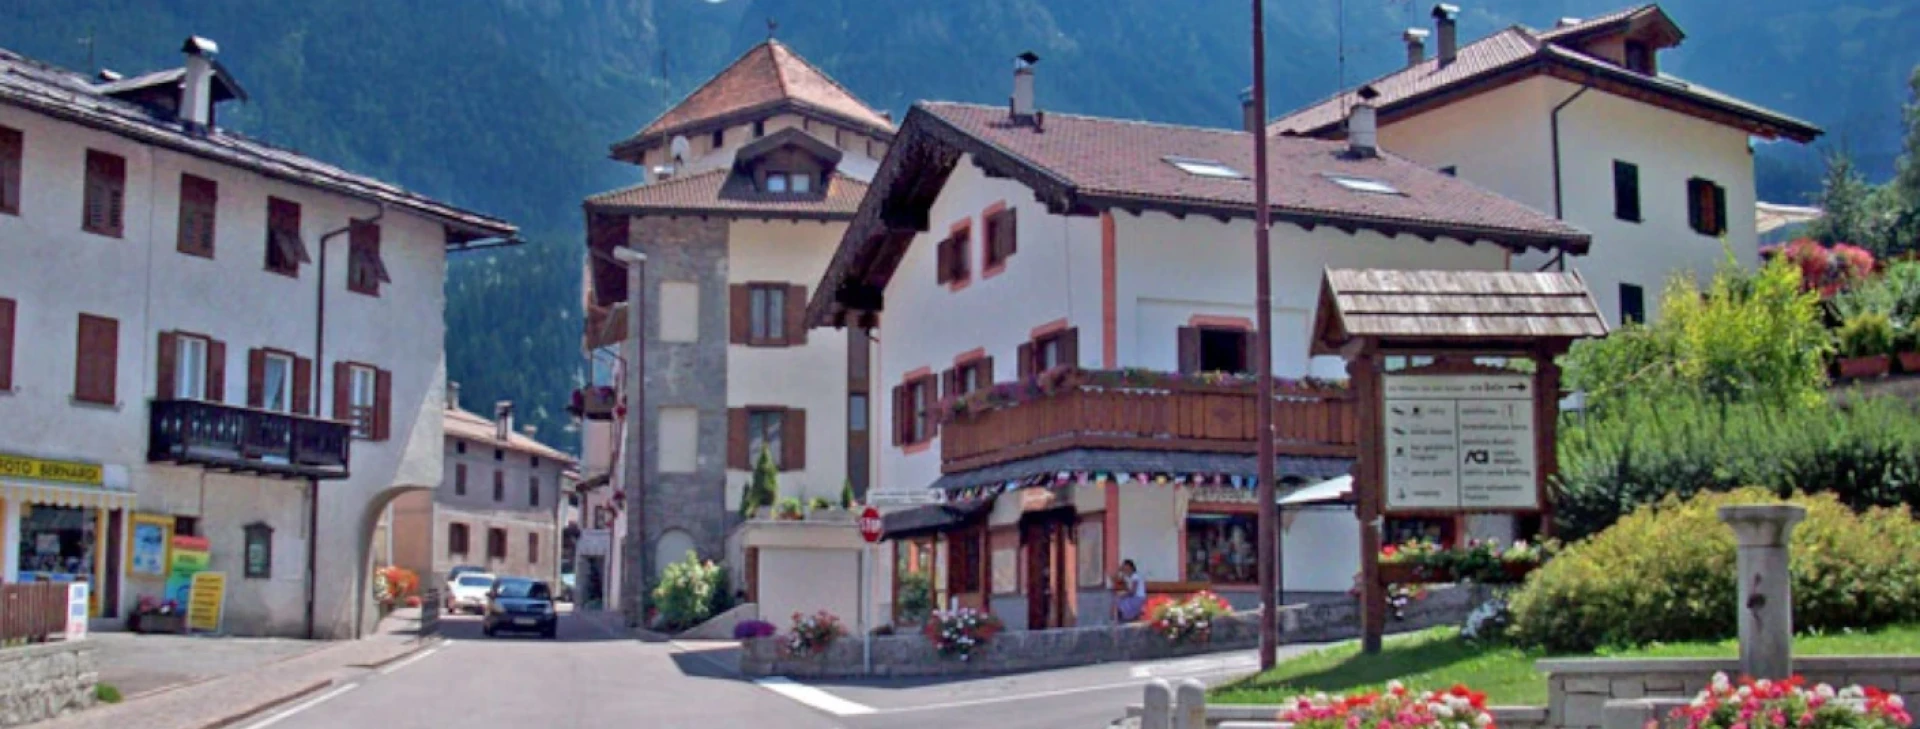 Strutture a alberghi convenzionati in Val di Sole